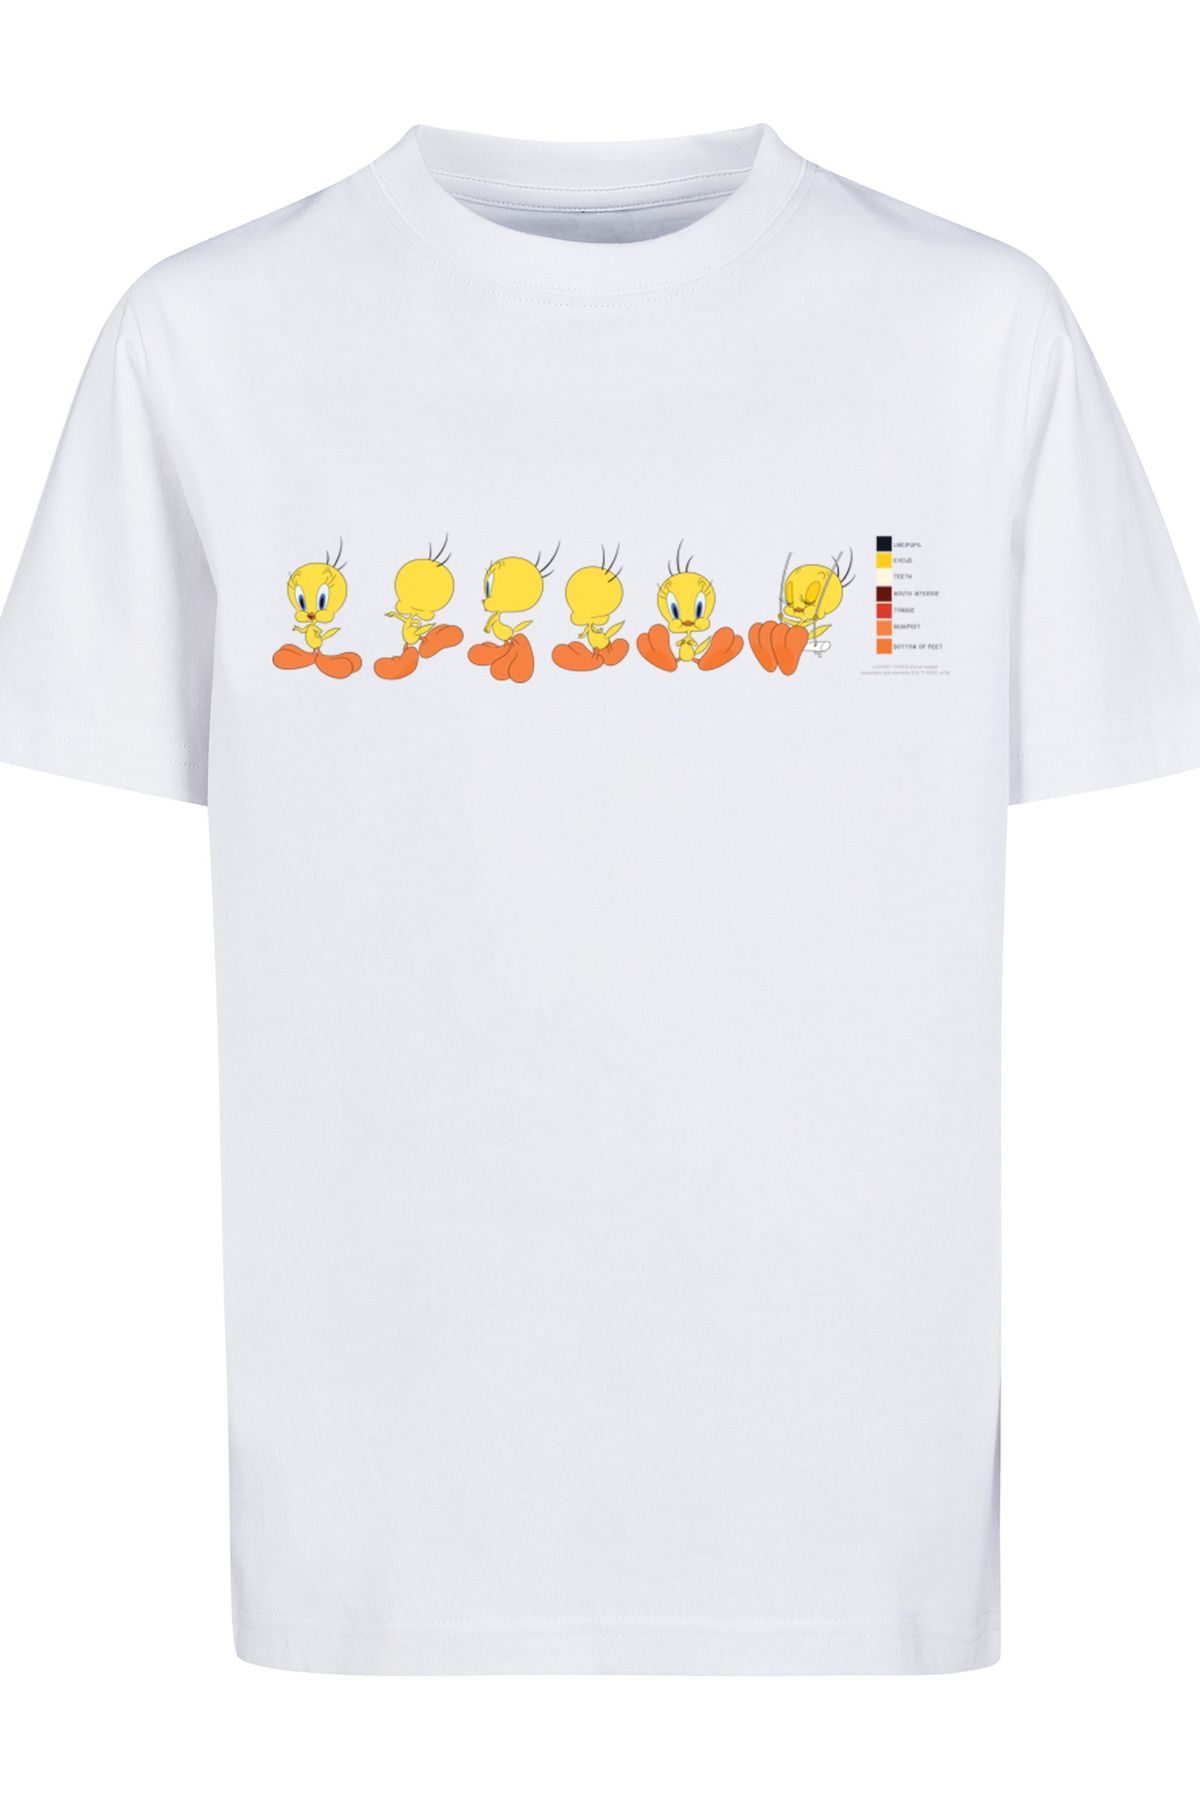 F4NT4STIC Kinder Looney Tunes mit Pie - Tweety Farbcode-WHT Trendyol Kids T-Shirt Basic